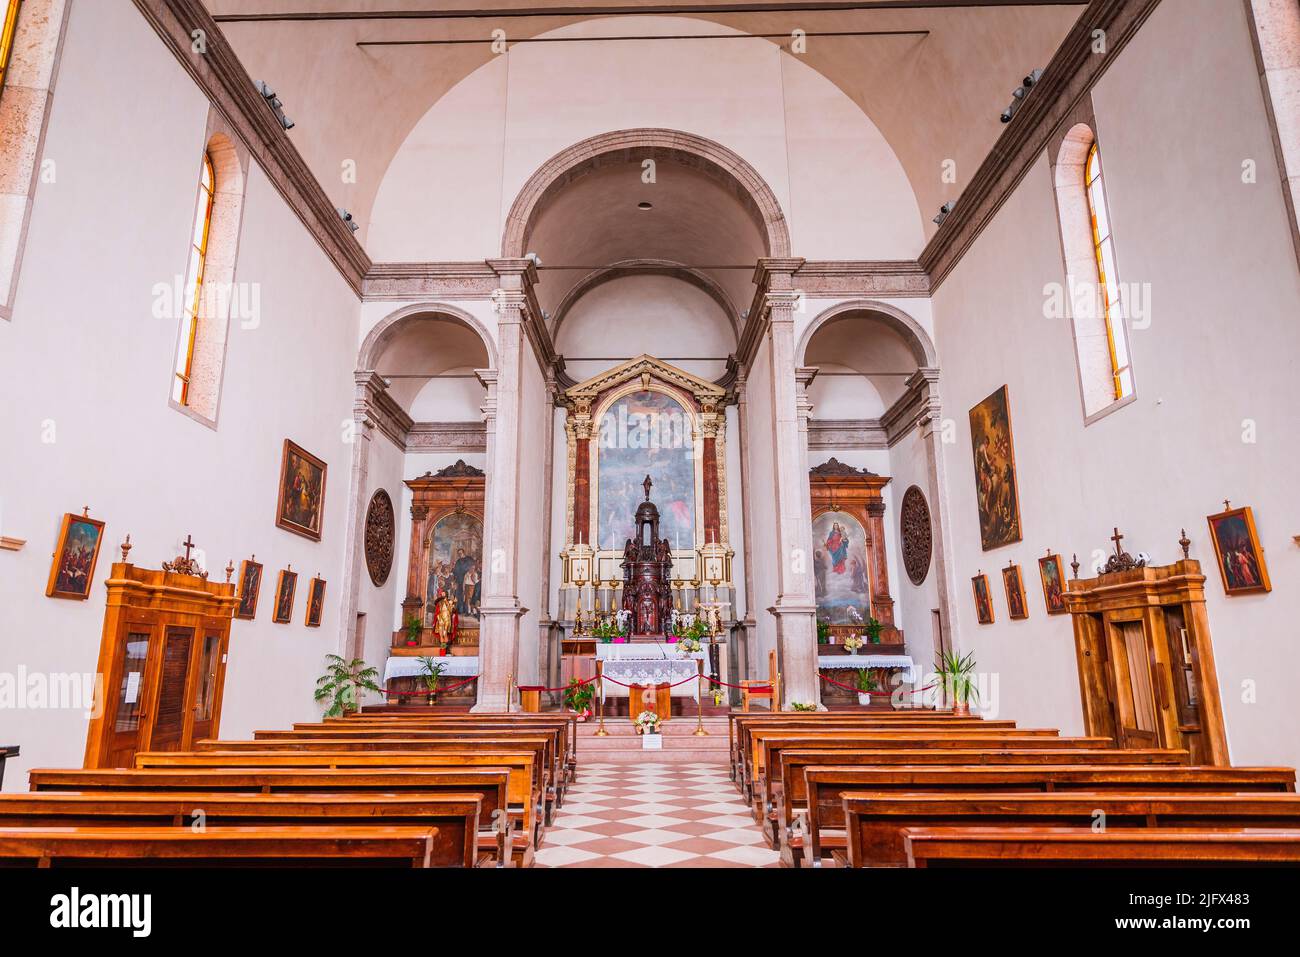 Interior. The Renaissance church of San Rocco in Martiri Square - Piazza dei Martiri - Martyrs square. Belluno, Veneto, Italy, Europe. Stock Photo